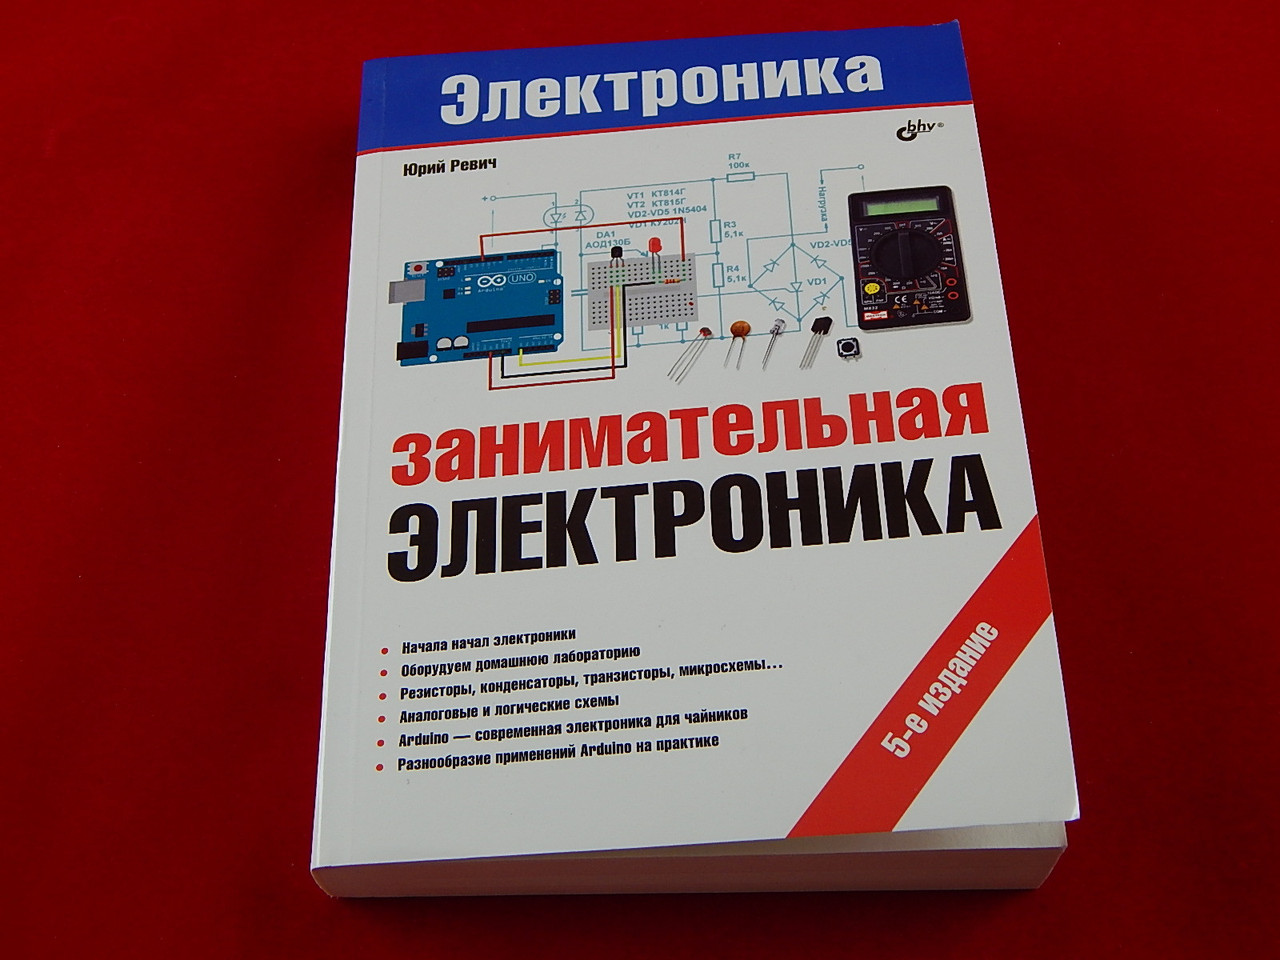 Занимательная электроника, 5-е издание, Книга Ревич Ю., основы электроники и примеры применения платформы